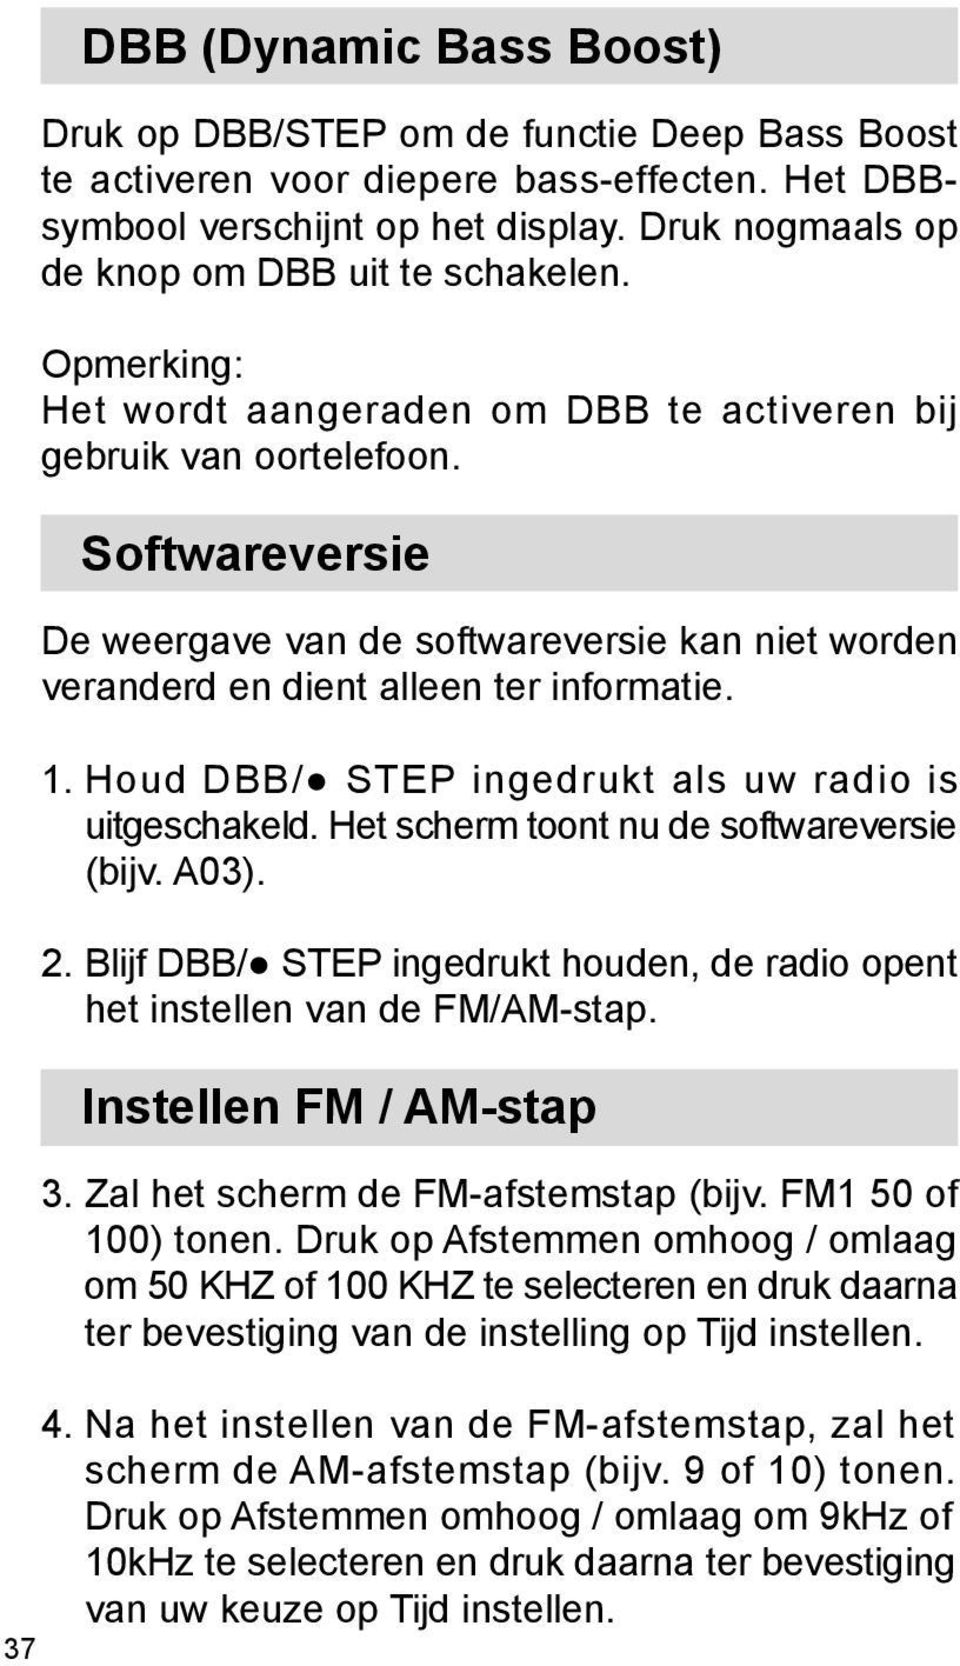 Softwareversie De weergave van de softwareversie kan niet worden veranderd en dient alleen ter informatie. 1. Houd DBB/ STEP ingedrukt als uw radio is uitgeschakeld.